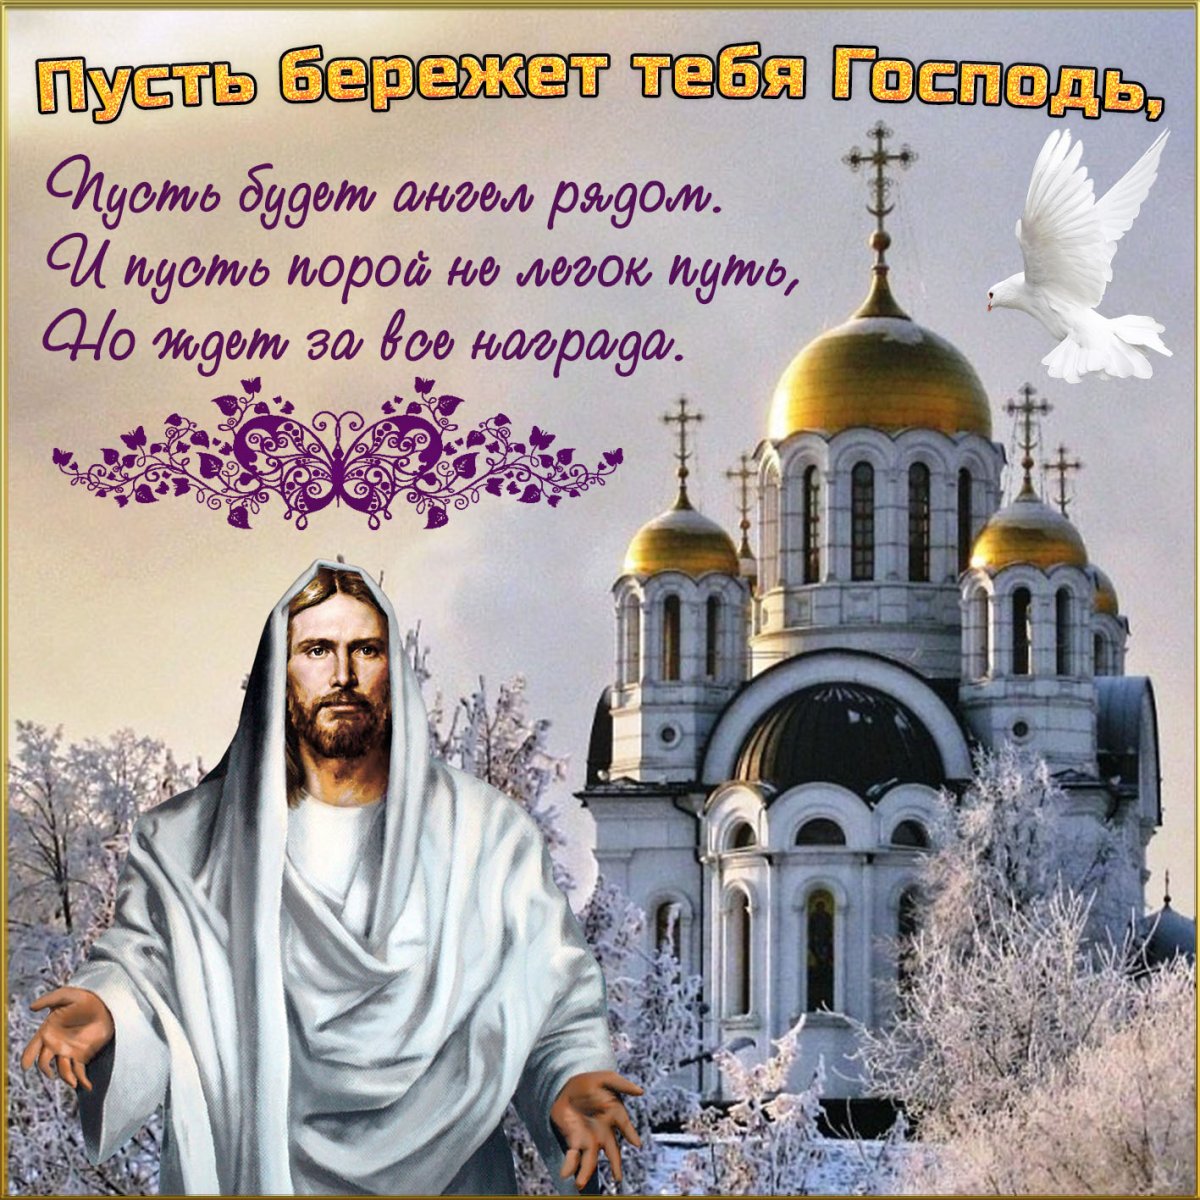 Портал «Милосердие.ru» подготовил мысли-открытки, которые порадуют и помогут